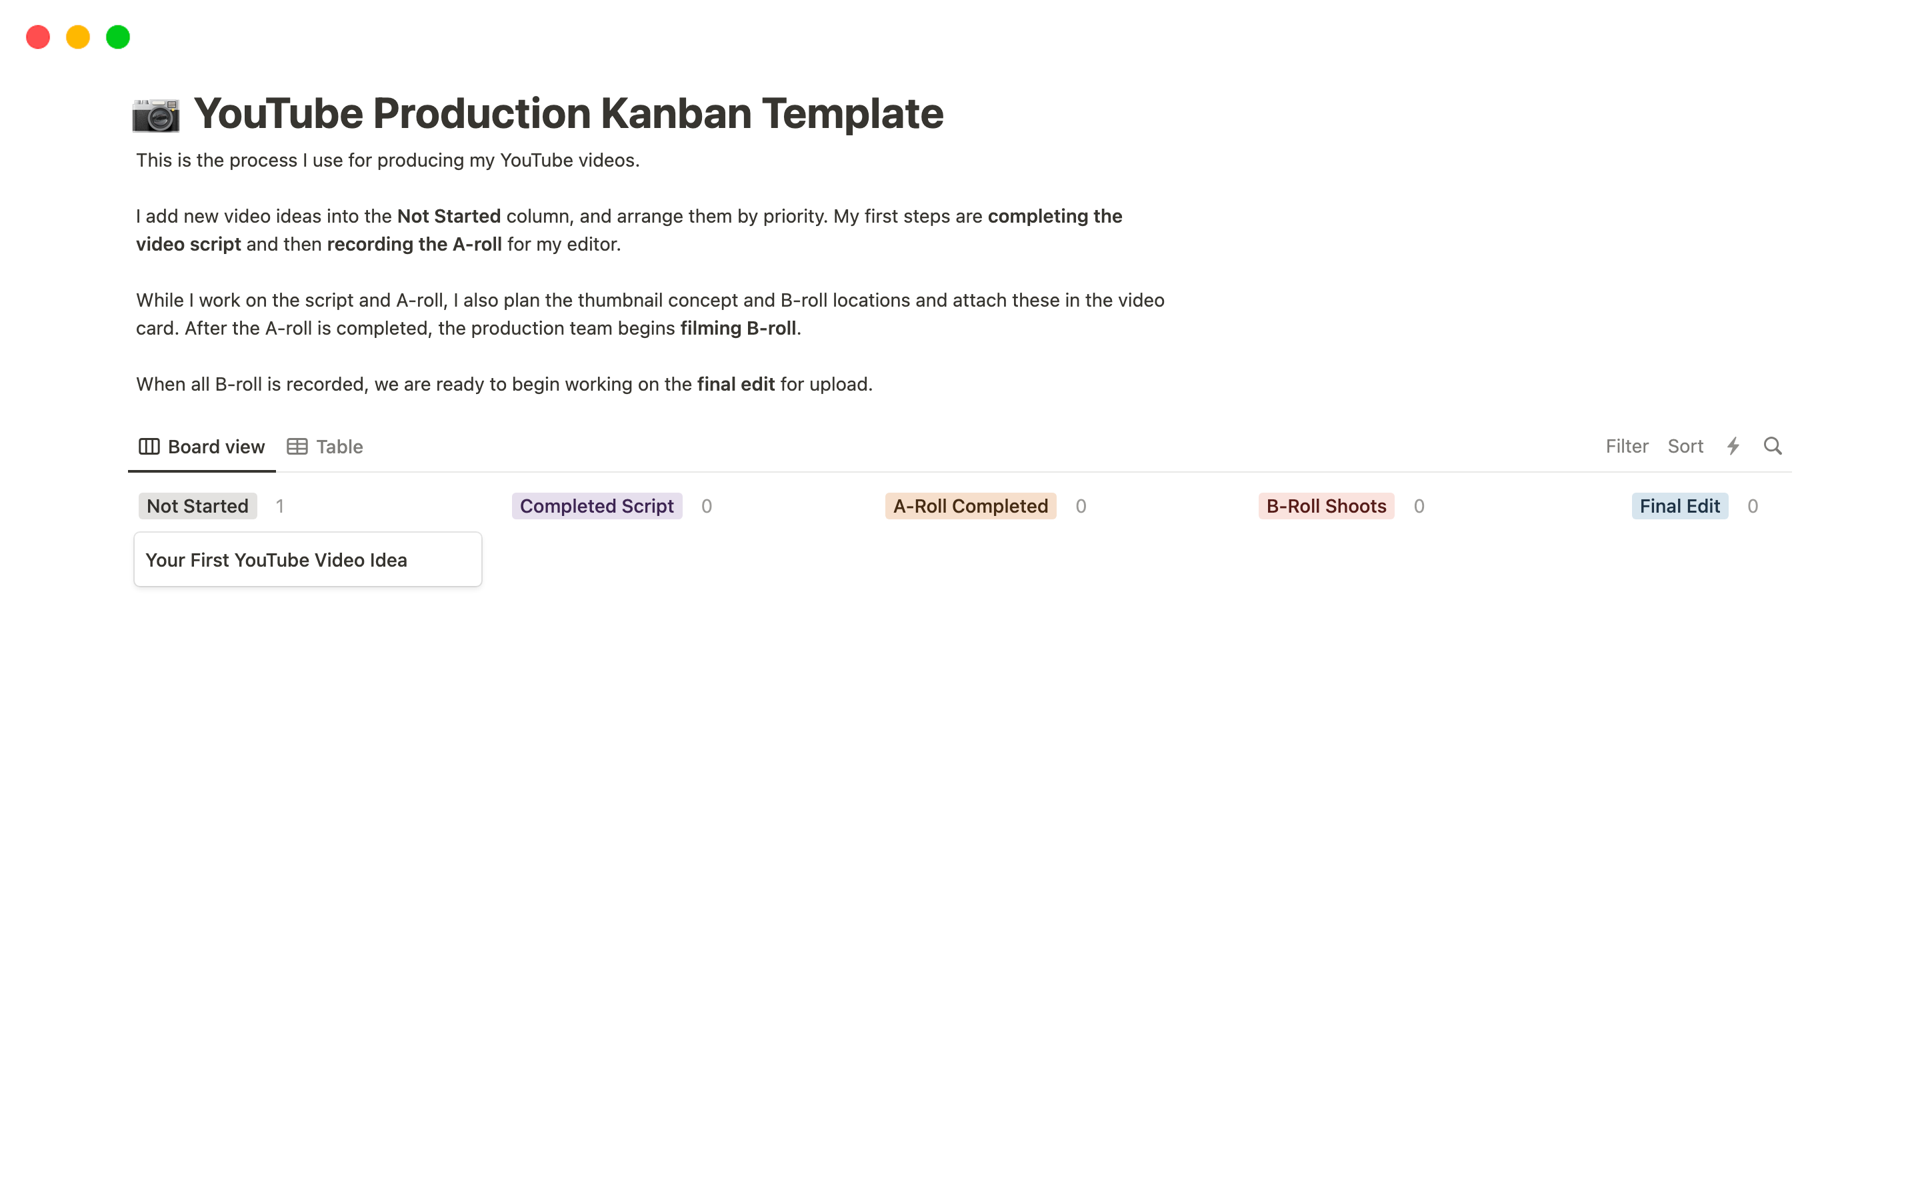 Vista previa de una plantilla para Captain Sinbad’s YouTube Production Kanban